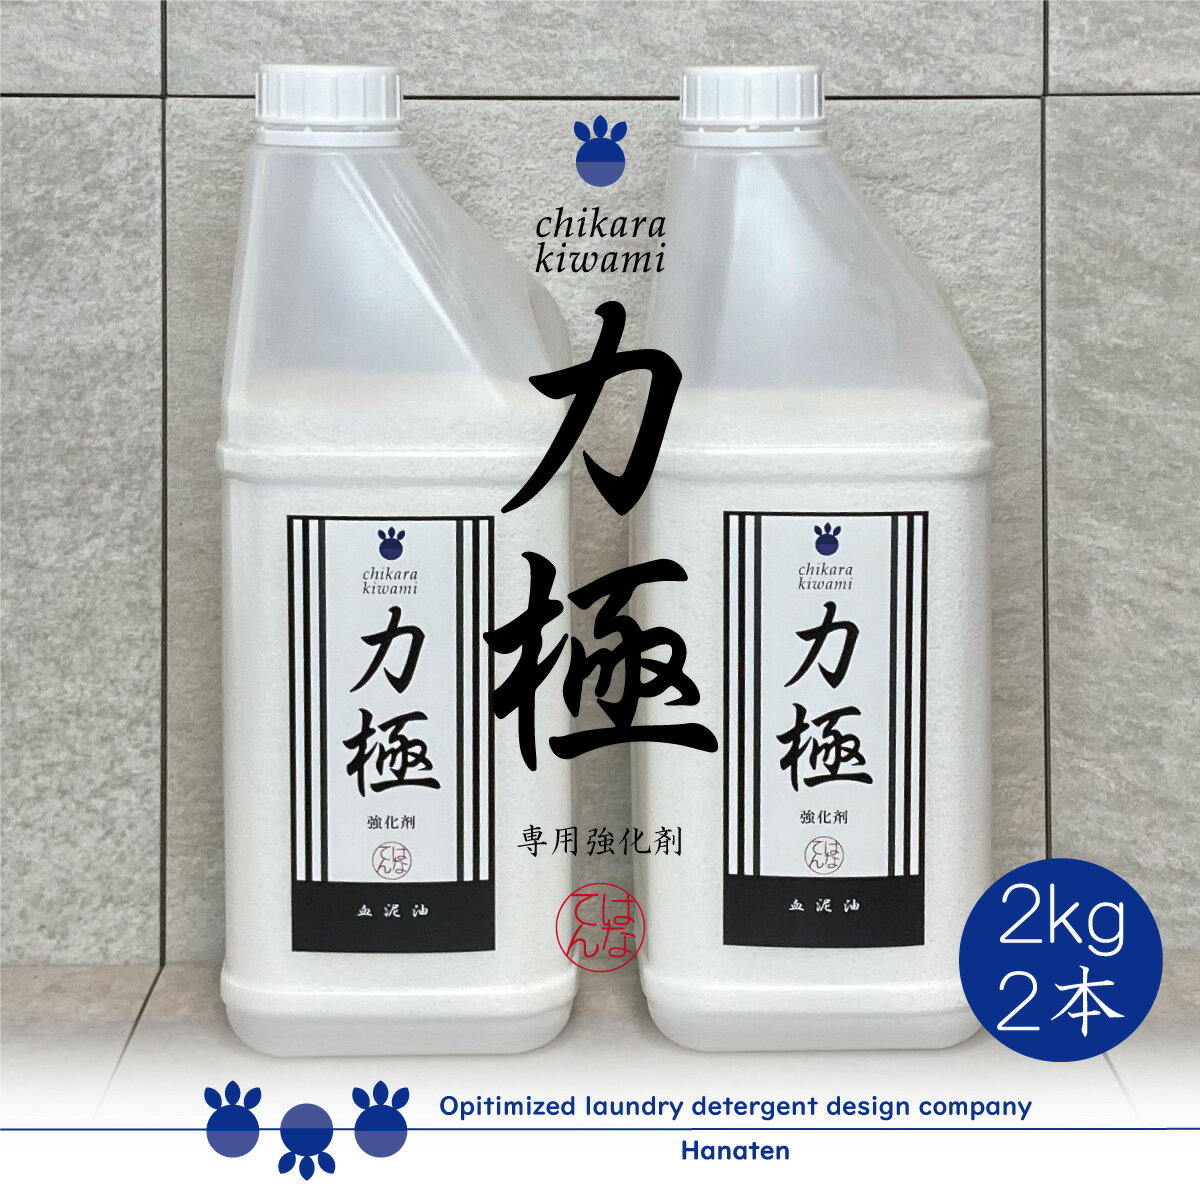 力極 -chikarakiwami- 2kg×2本 油 作業服 ニオイ ワイシャツ 洗剤強化剤 オイル 一刀両断シリーズに追加する強化剤 クリーニング師が開発　送料無料